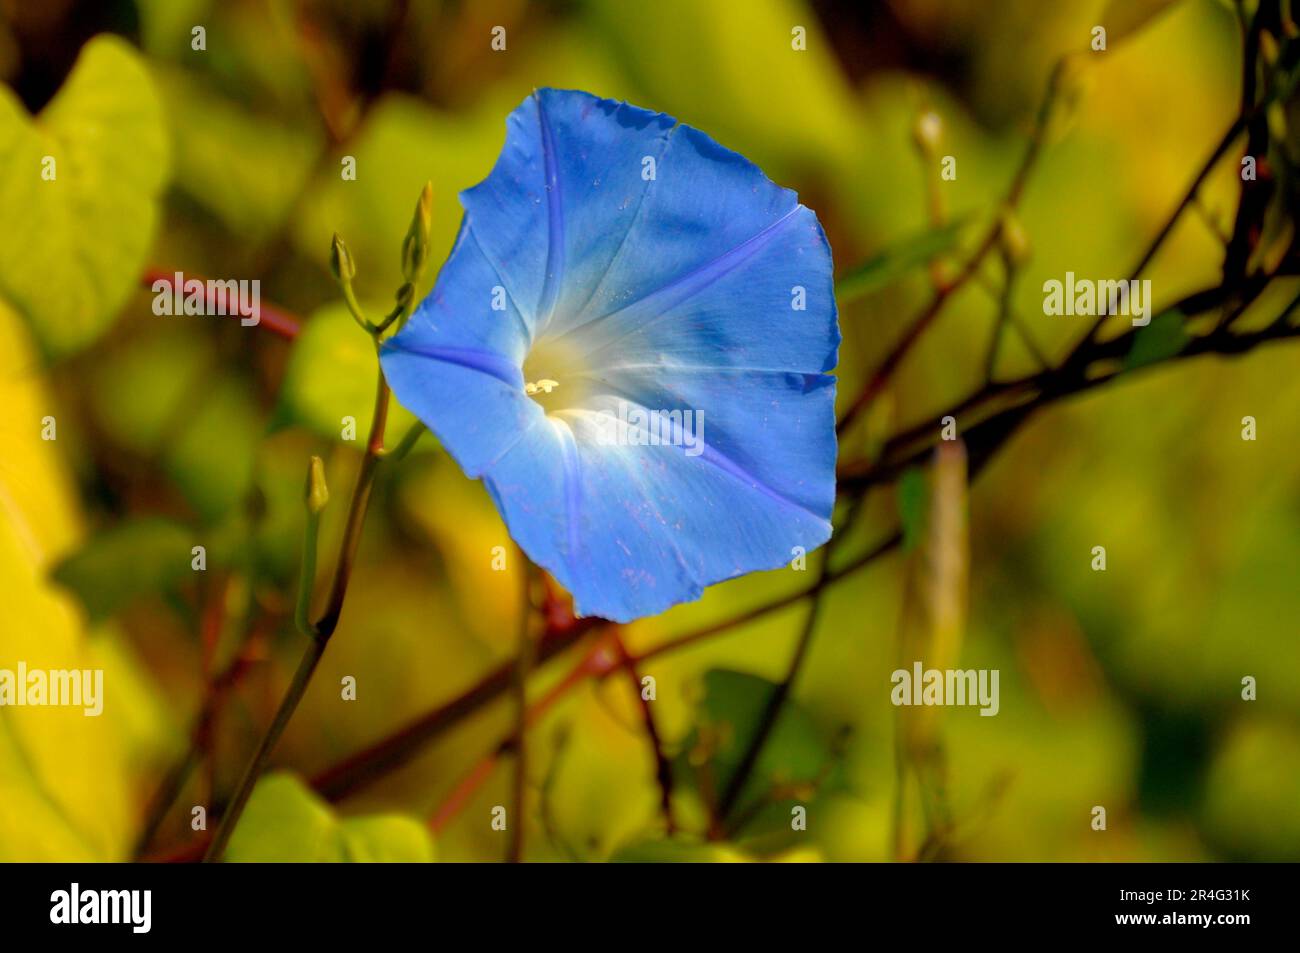 Bleu matin gloire floraison dans le jardin, Ipomoea violacea Banque D'Images